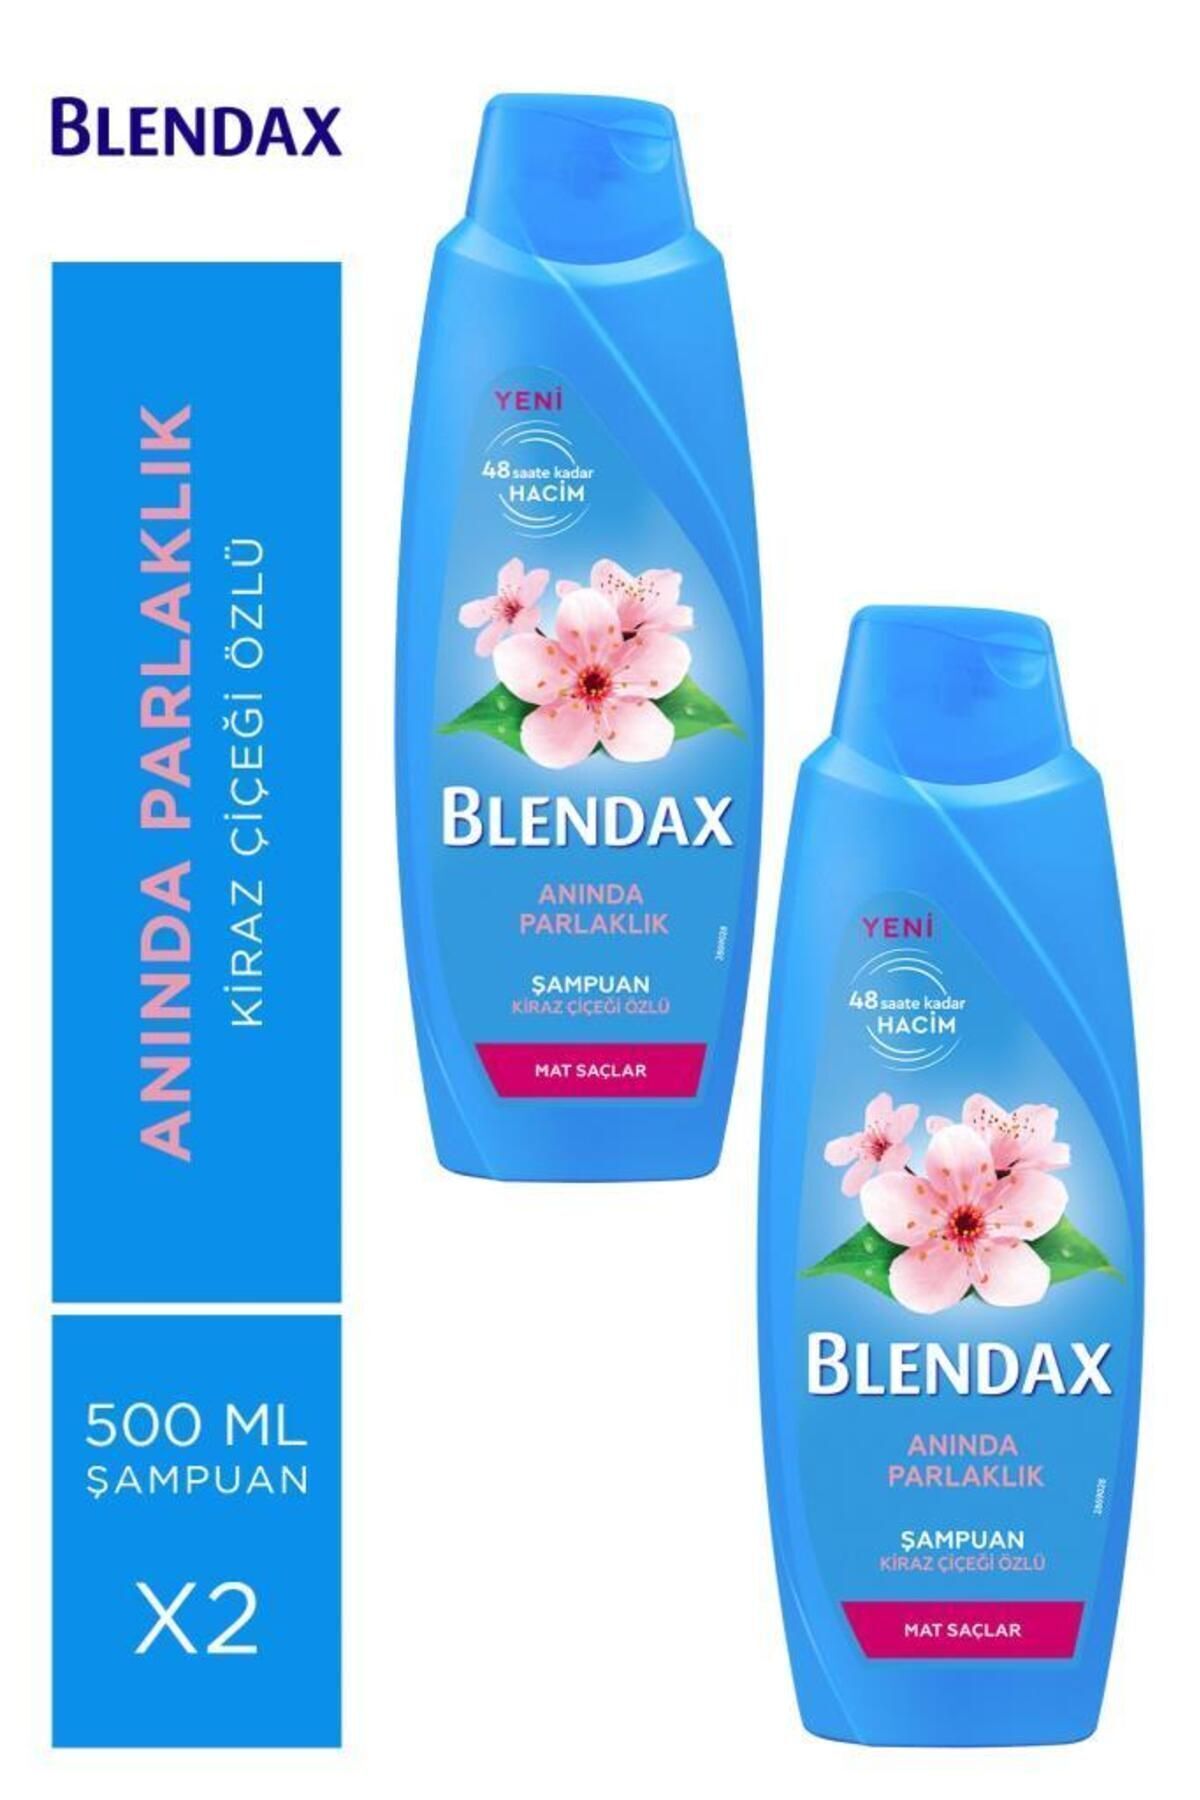 Blendax Anında Parlaklık Ve Yumuşaklık Kiraz Çiçeği Özlü Şampuan 500 ml X 2 Adet